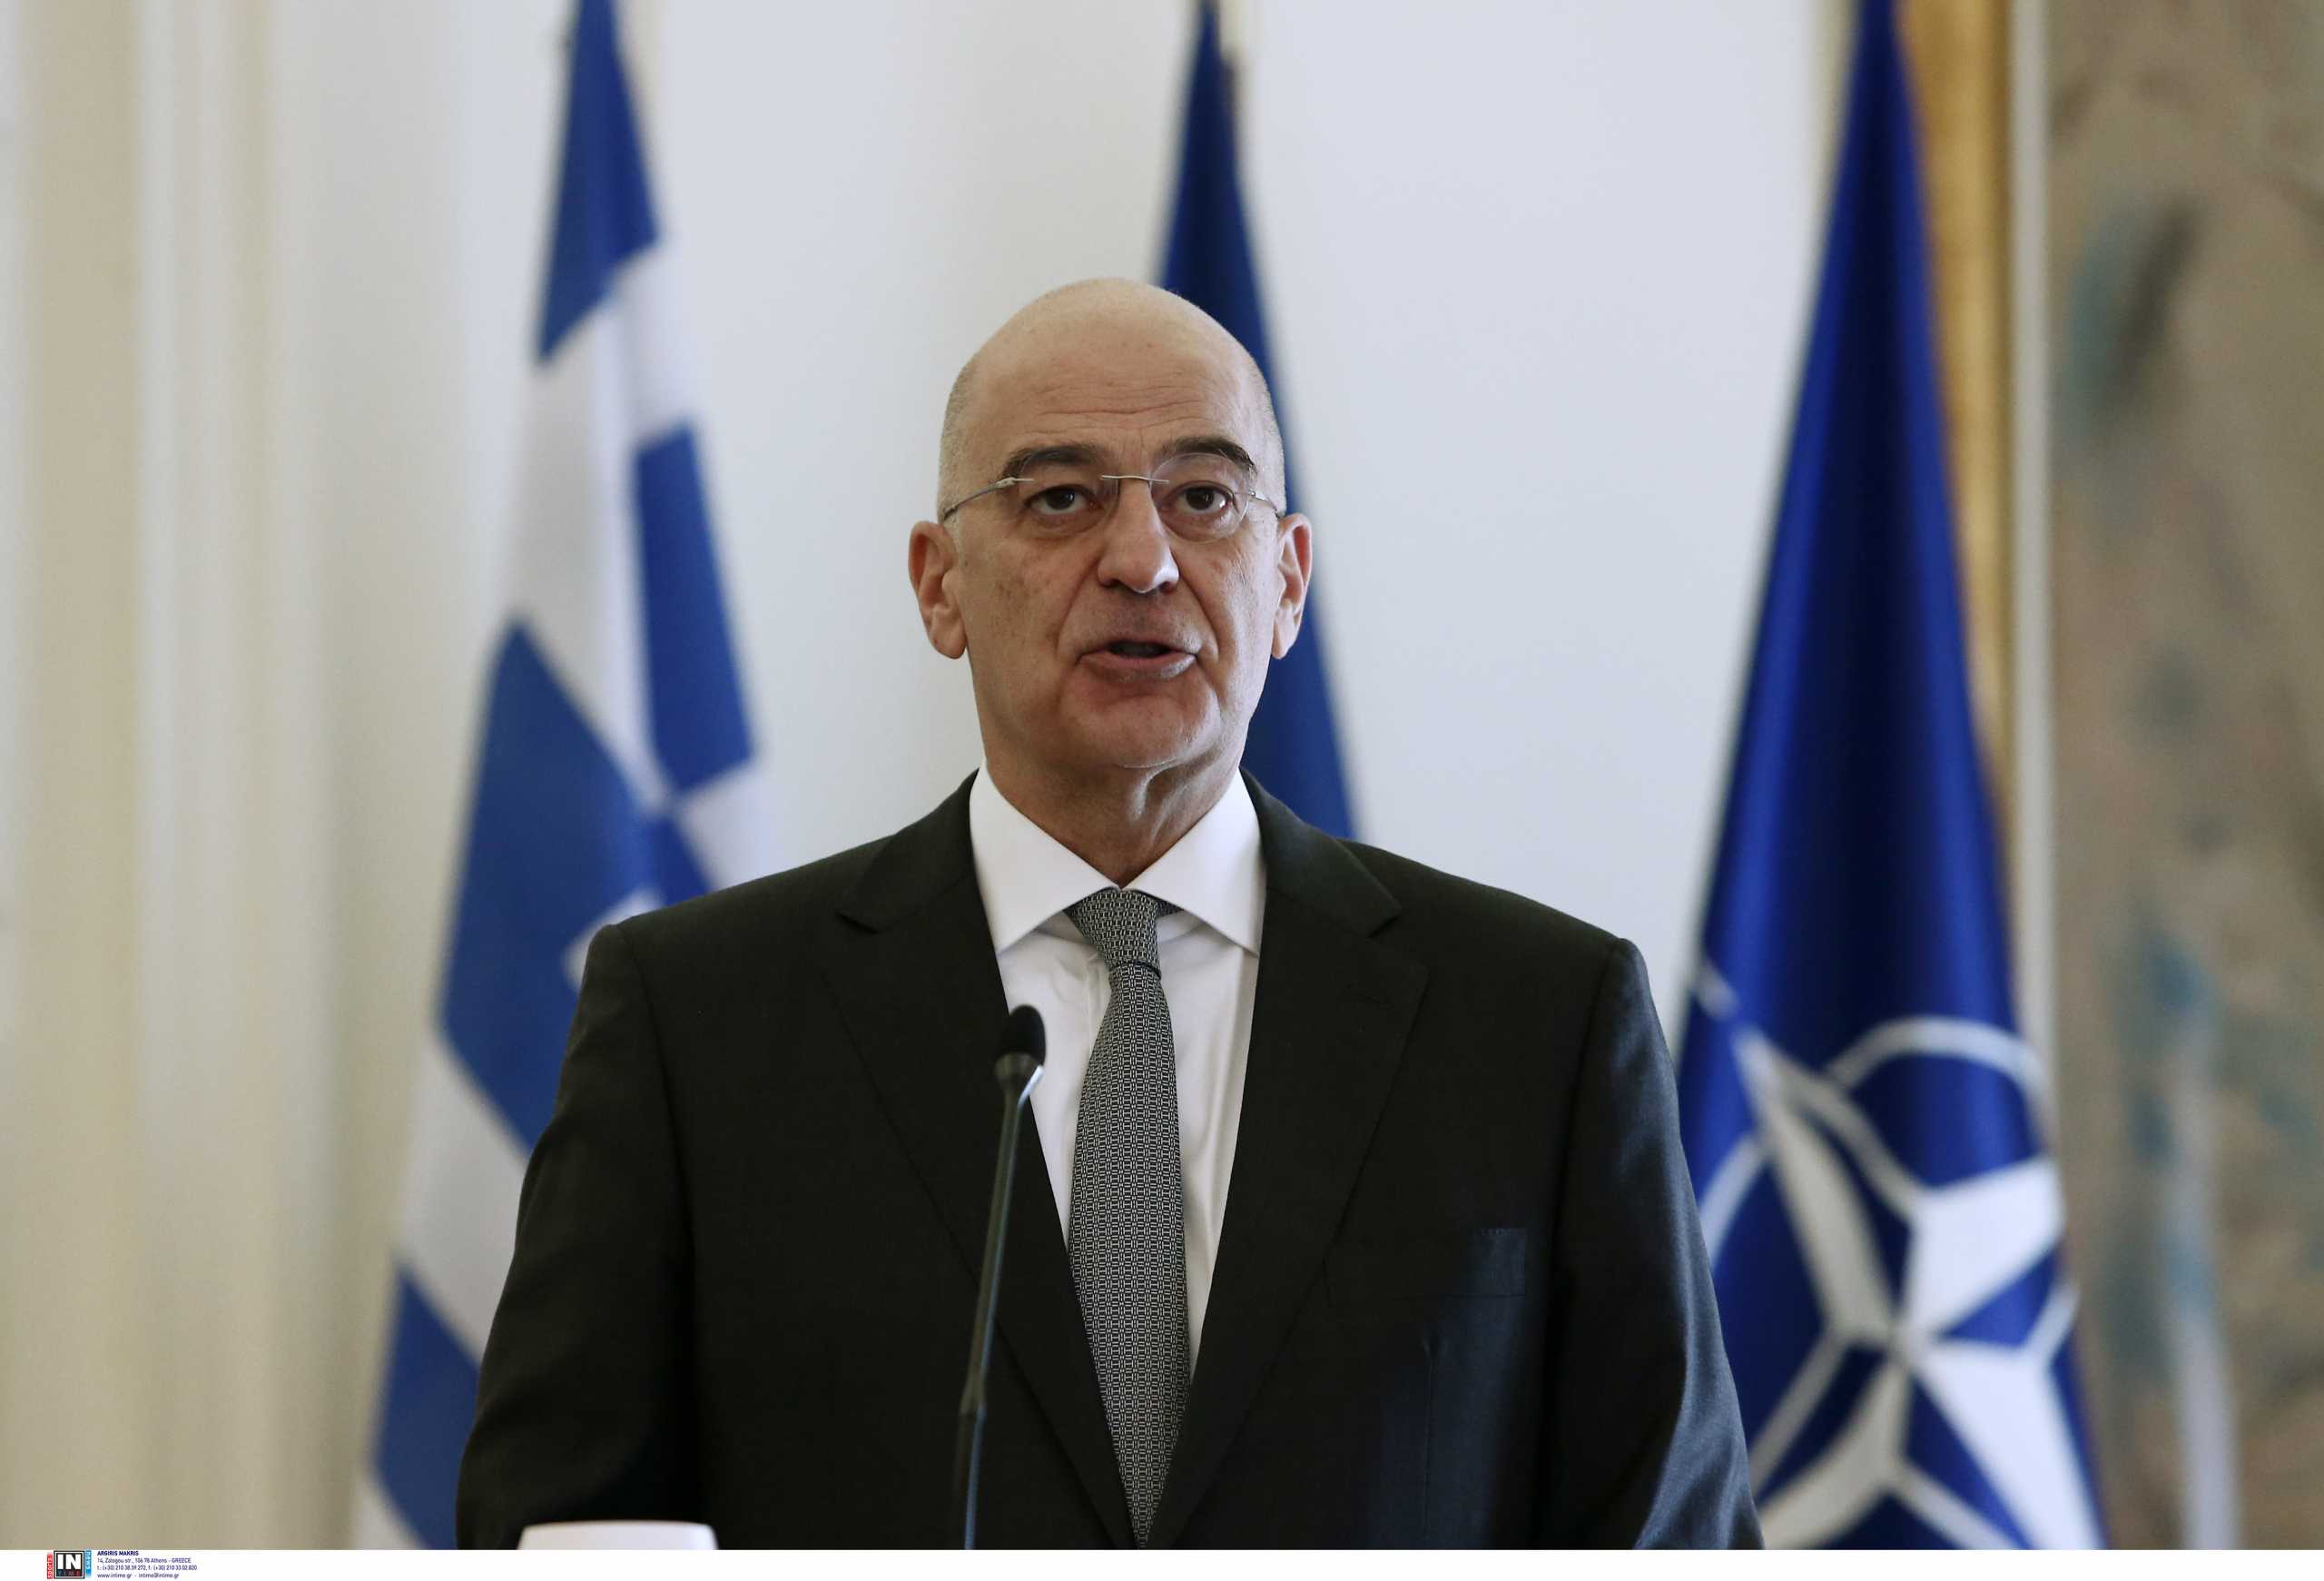 Νίκος Δένδιας: Η Ελλάδα είναι έτοιμη να καλοδεχτεί την Φινλανδία και την Σουηδία στο ΝΑΤΟ